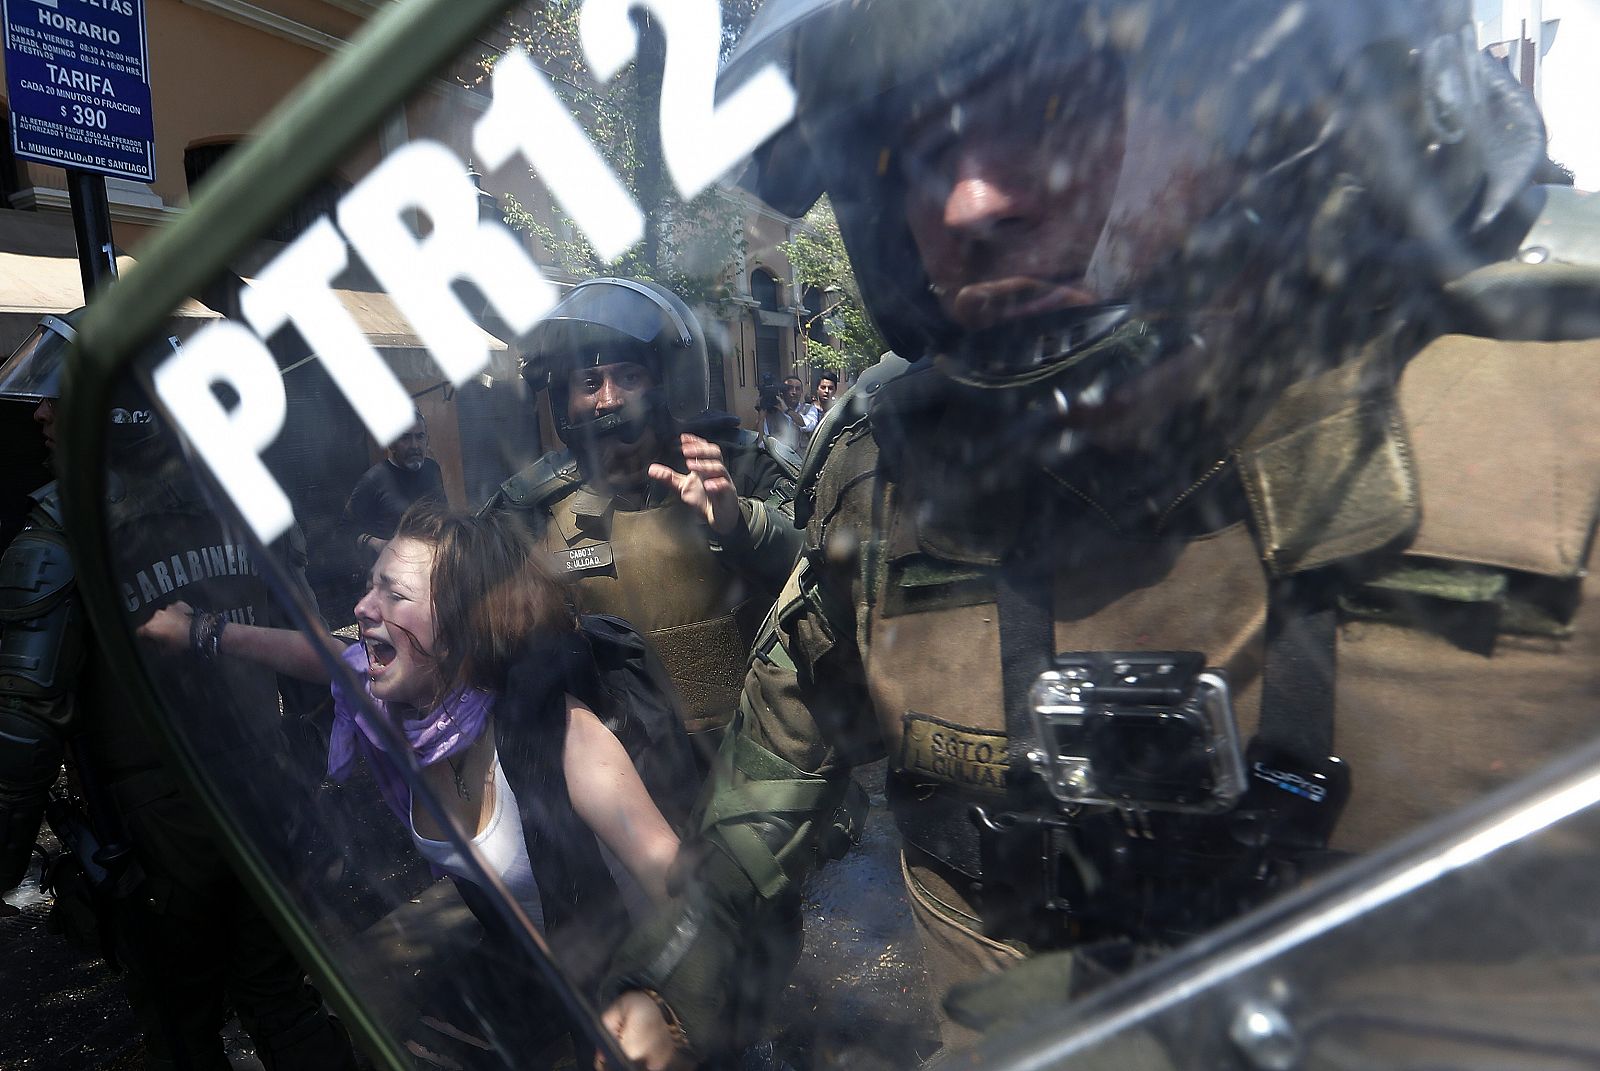 Una manifestante es detenida por miembros de la Policía de Carabineros en Santiago de Chile